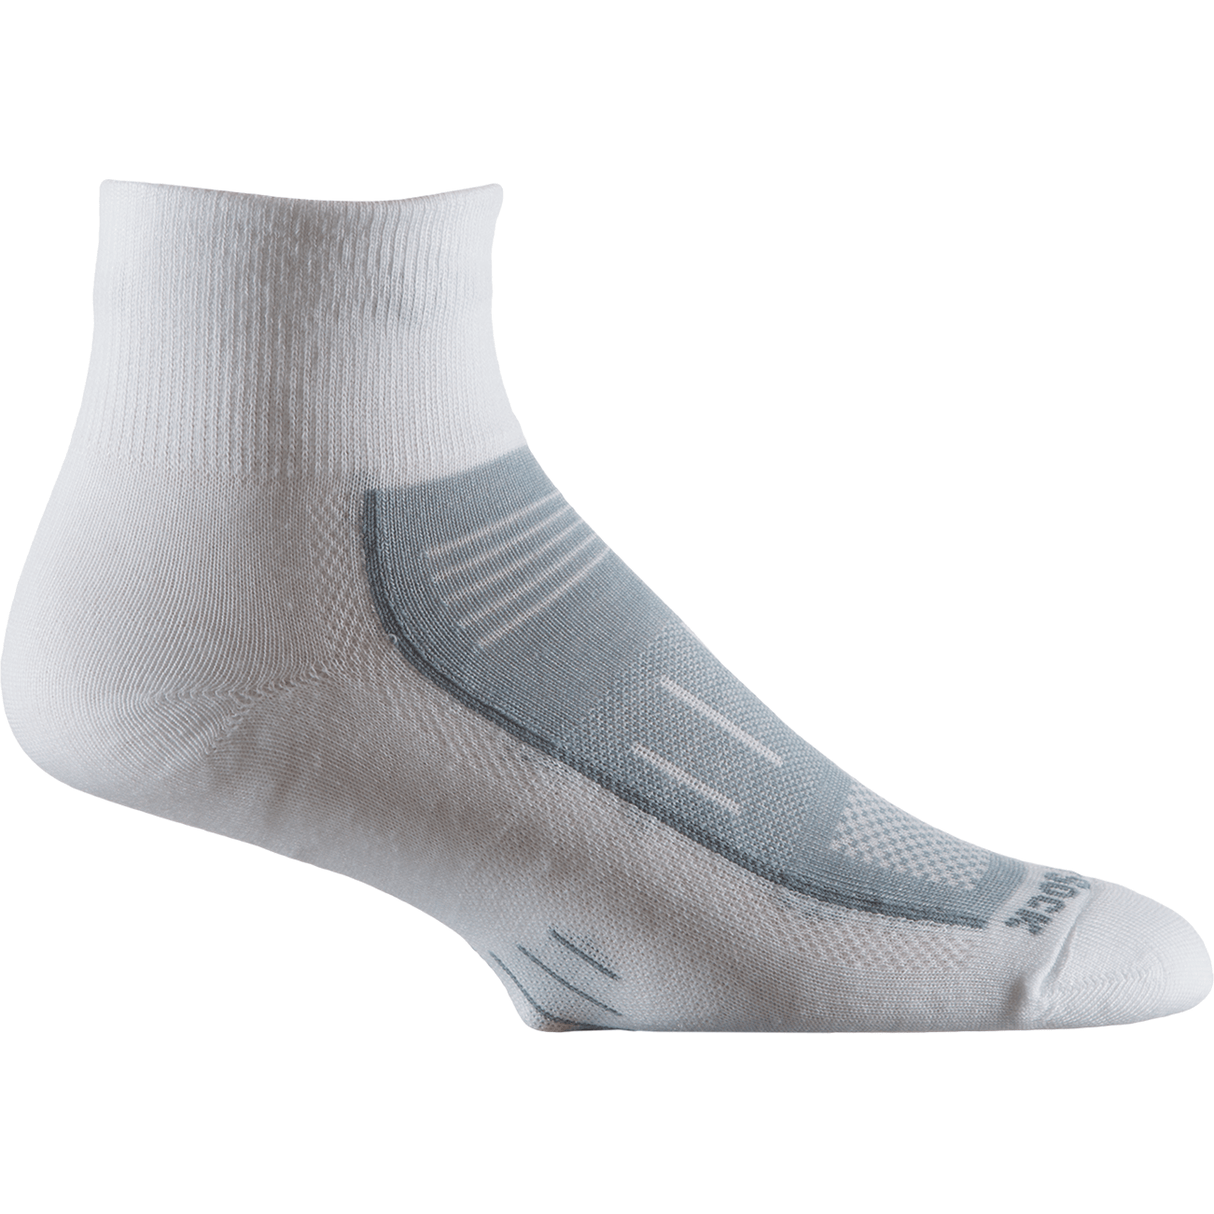 Wrightsock Endurance Quarter Anti-Blister Socks  -  Small / White